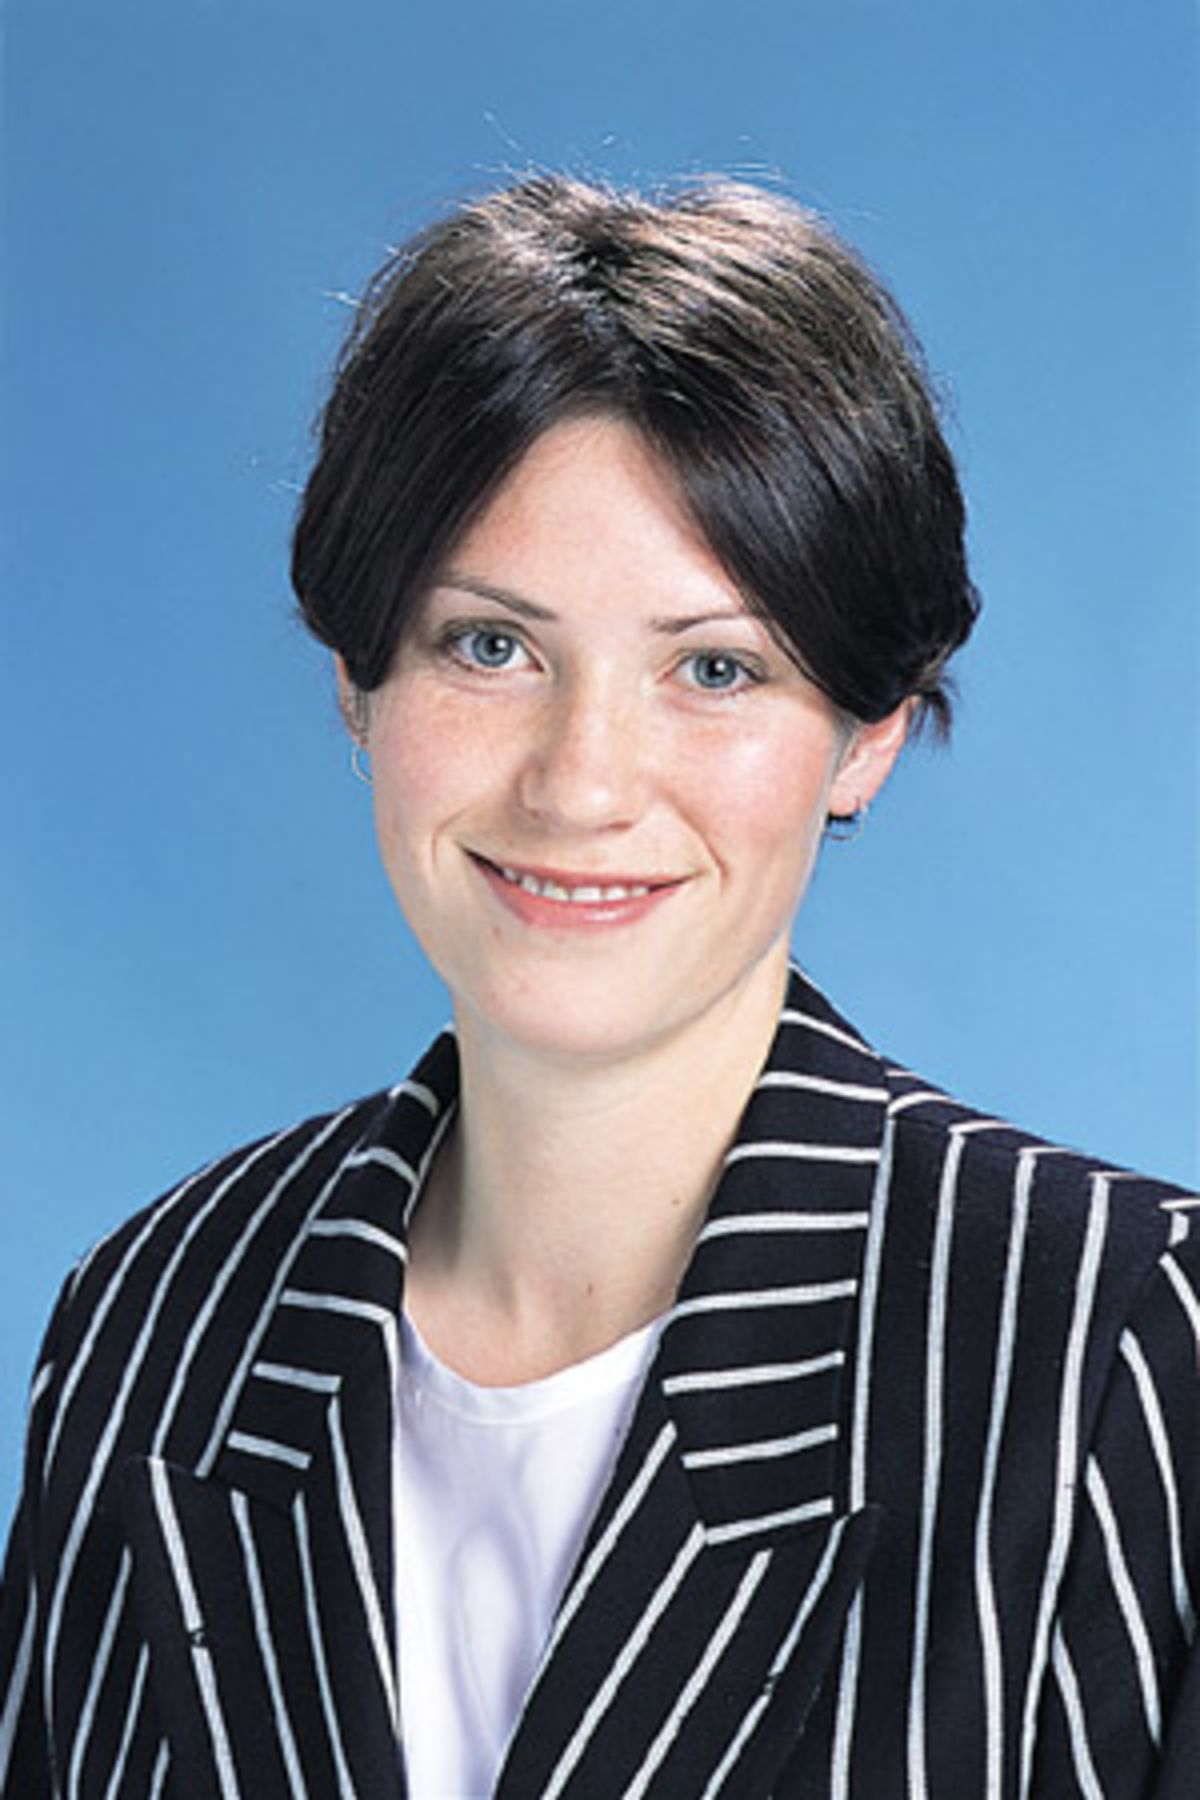 Anna Corbin Portrait December 2001